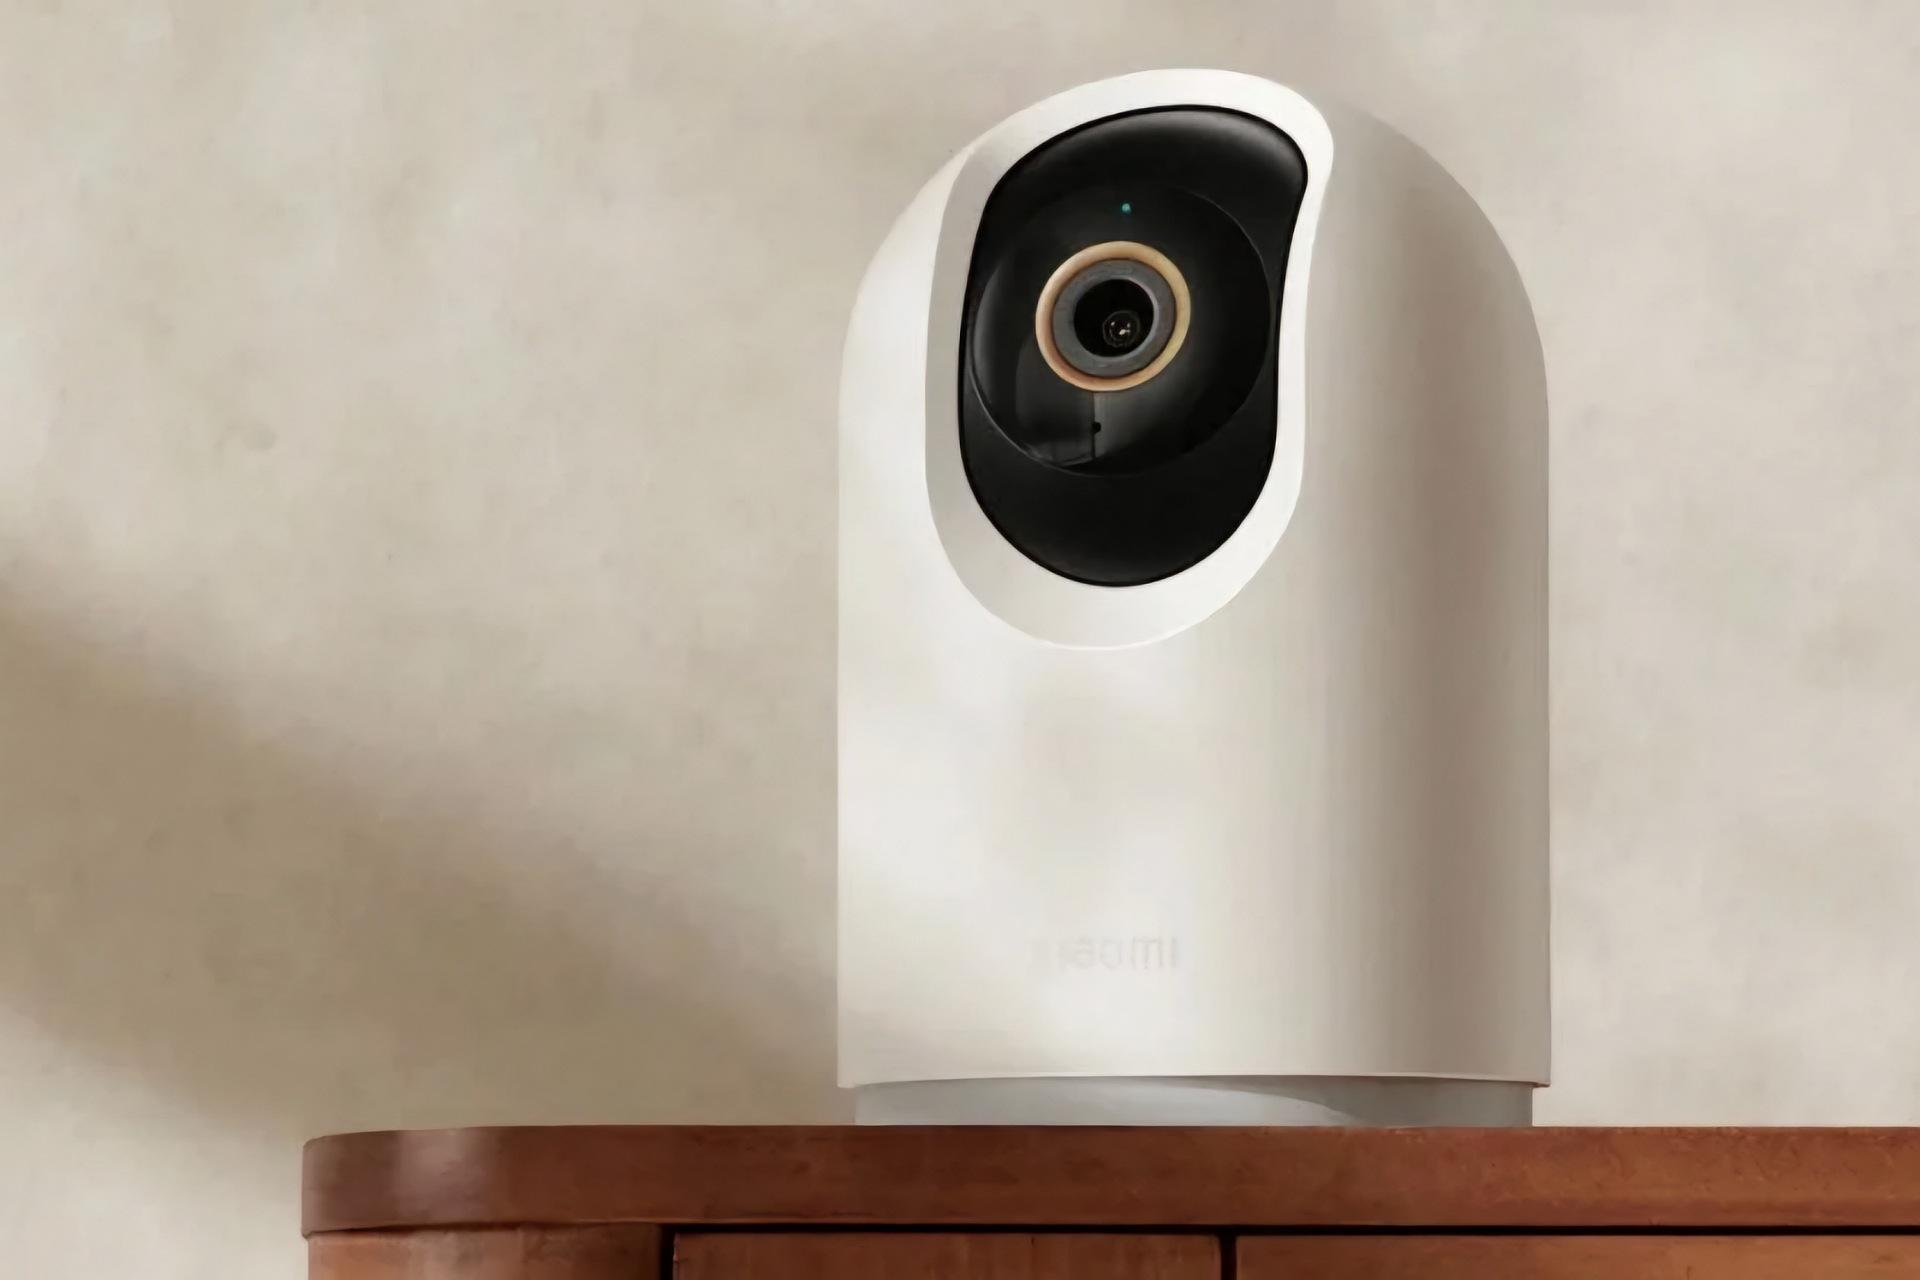 دوربین امنیتی C500 پرو شیائومی از نمای رو به رو